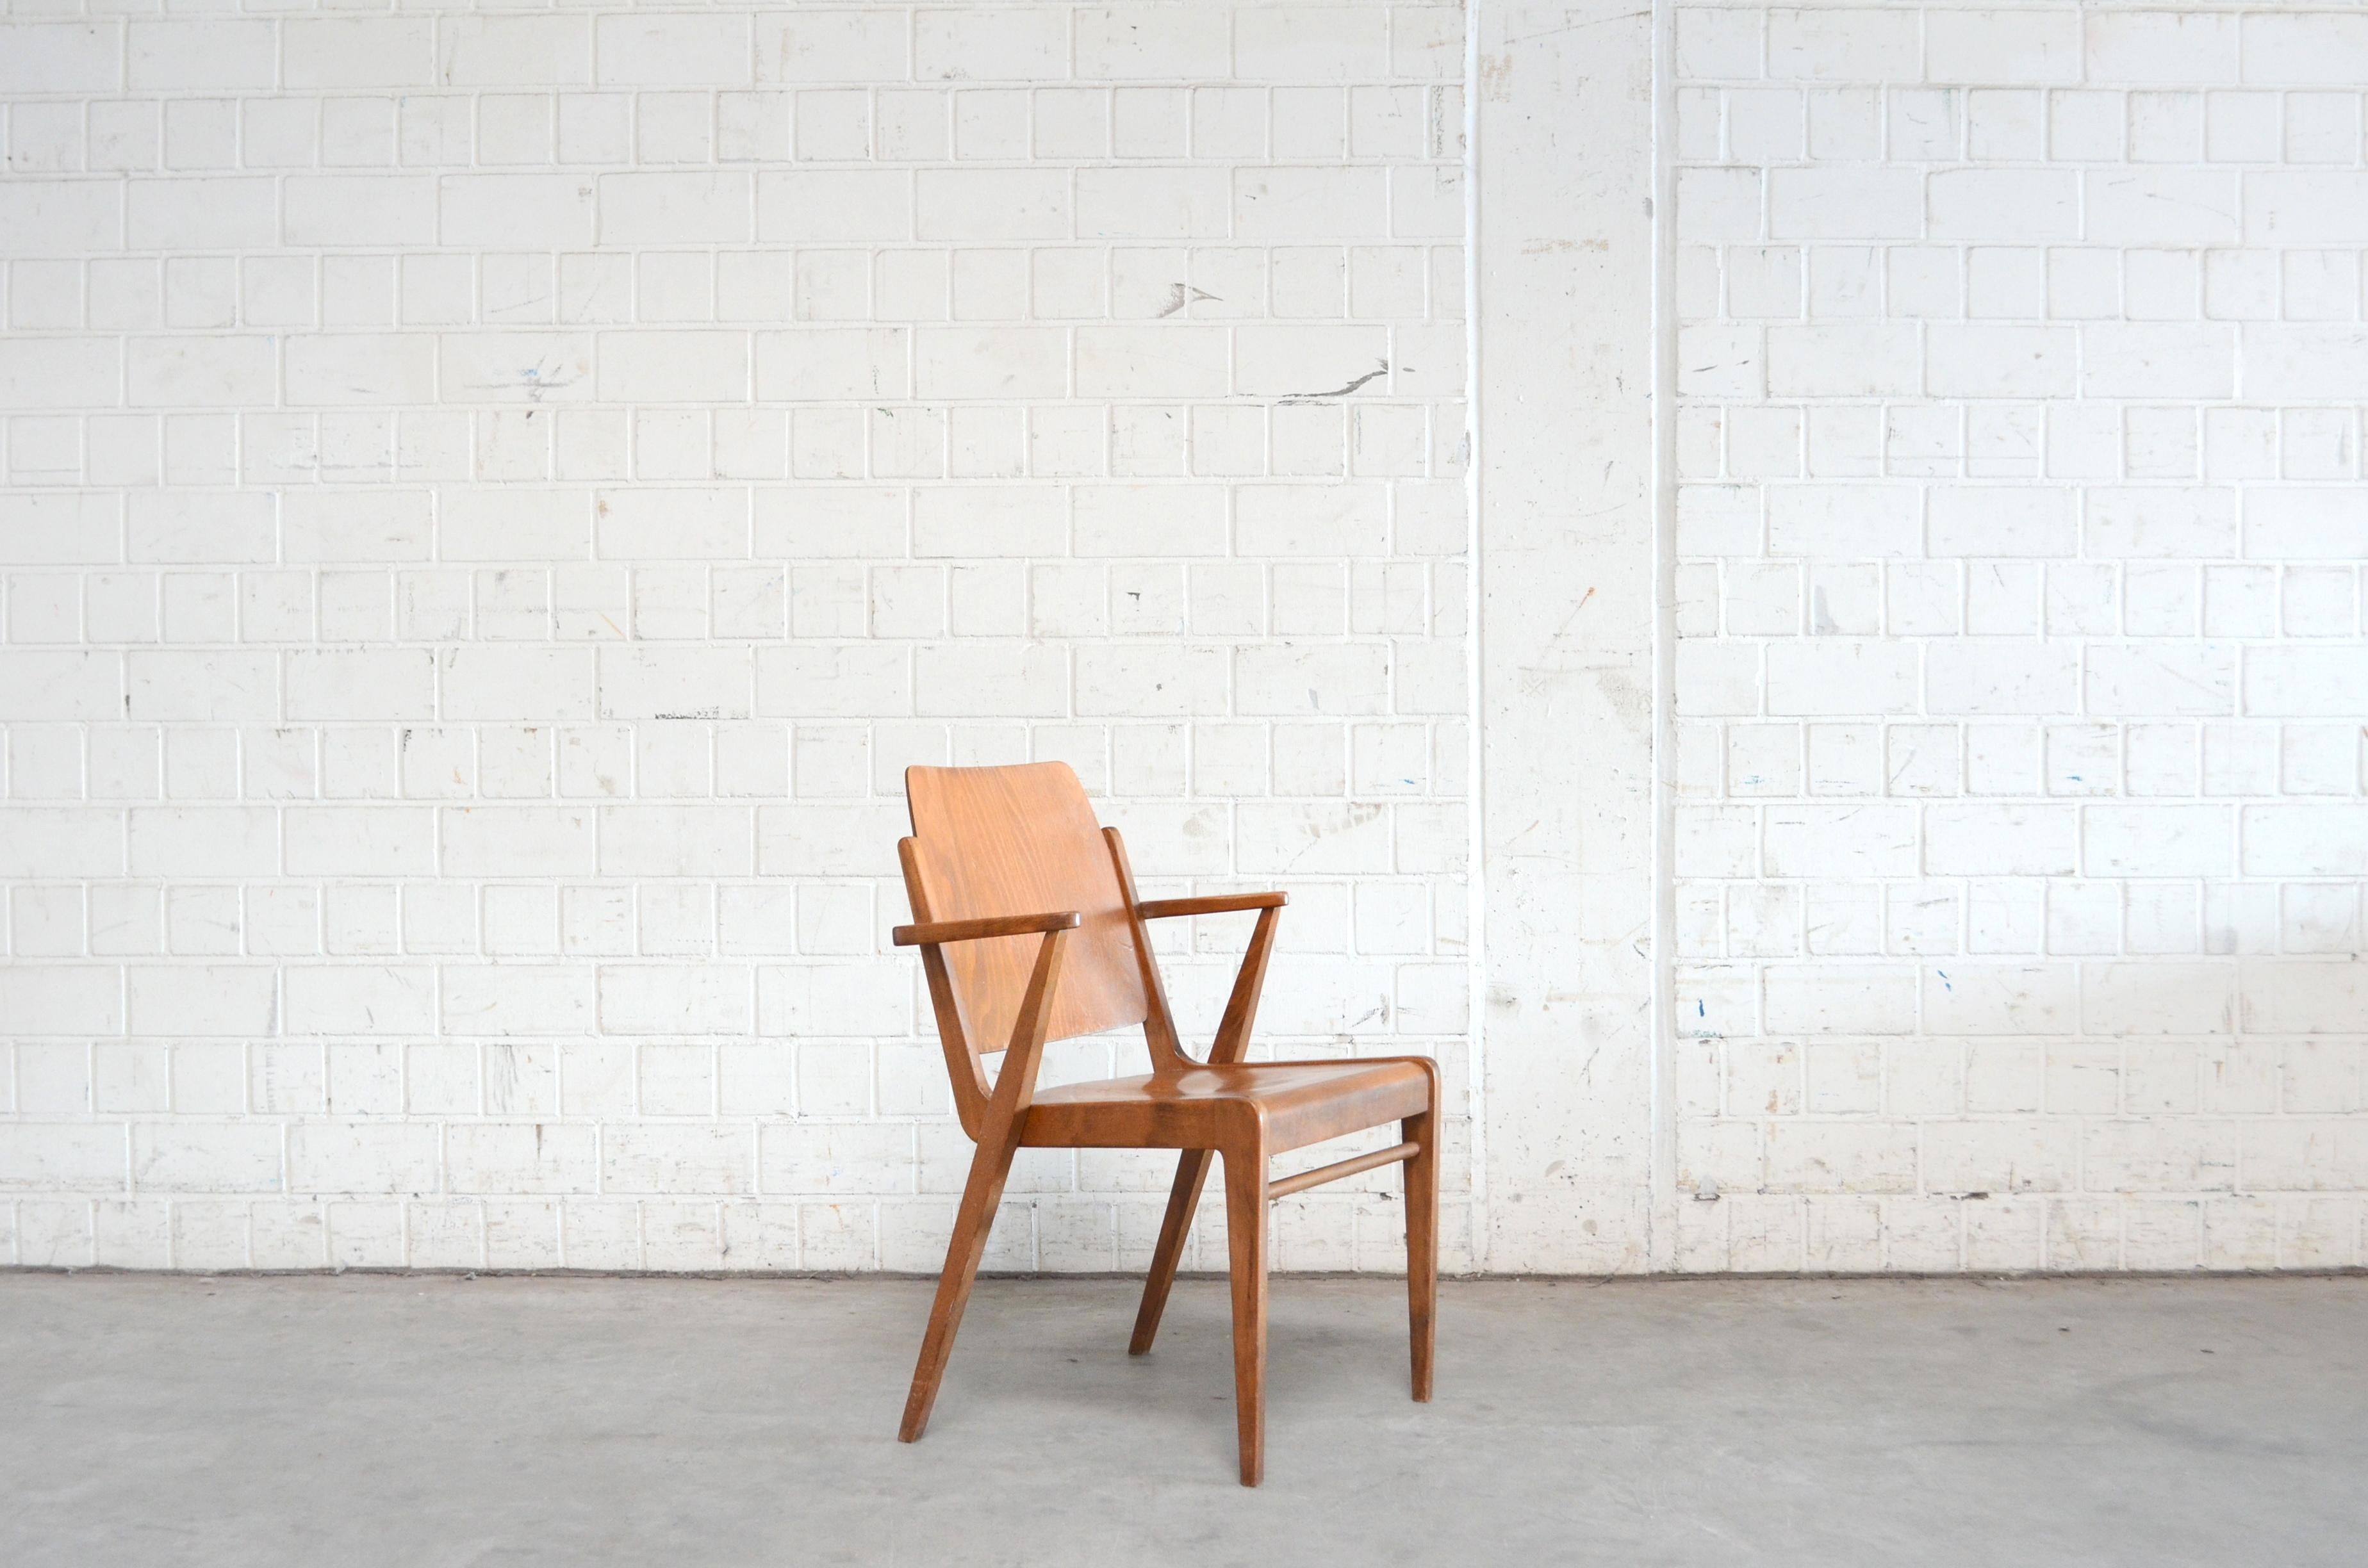 Diese Austro-Stühle wurden vom österreichischen Architekten Franz Schuster entworfen und von Wiesner-Hager hergestellt.
Bei dieser Version handelt es sich um die originale Vintage-Version mit braun gebeiztem Buchenholz und Lackierung.
Mit